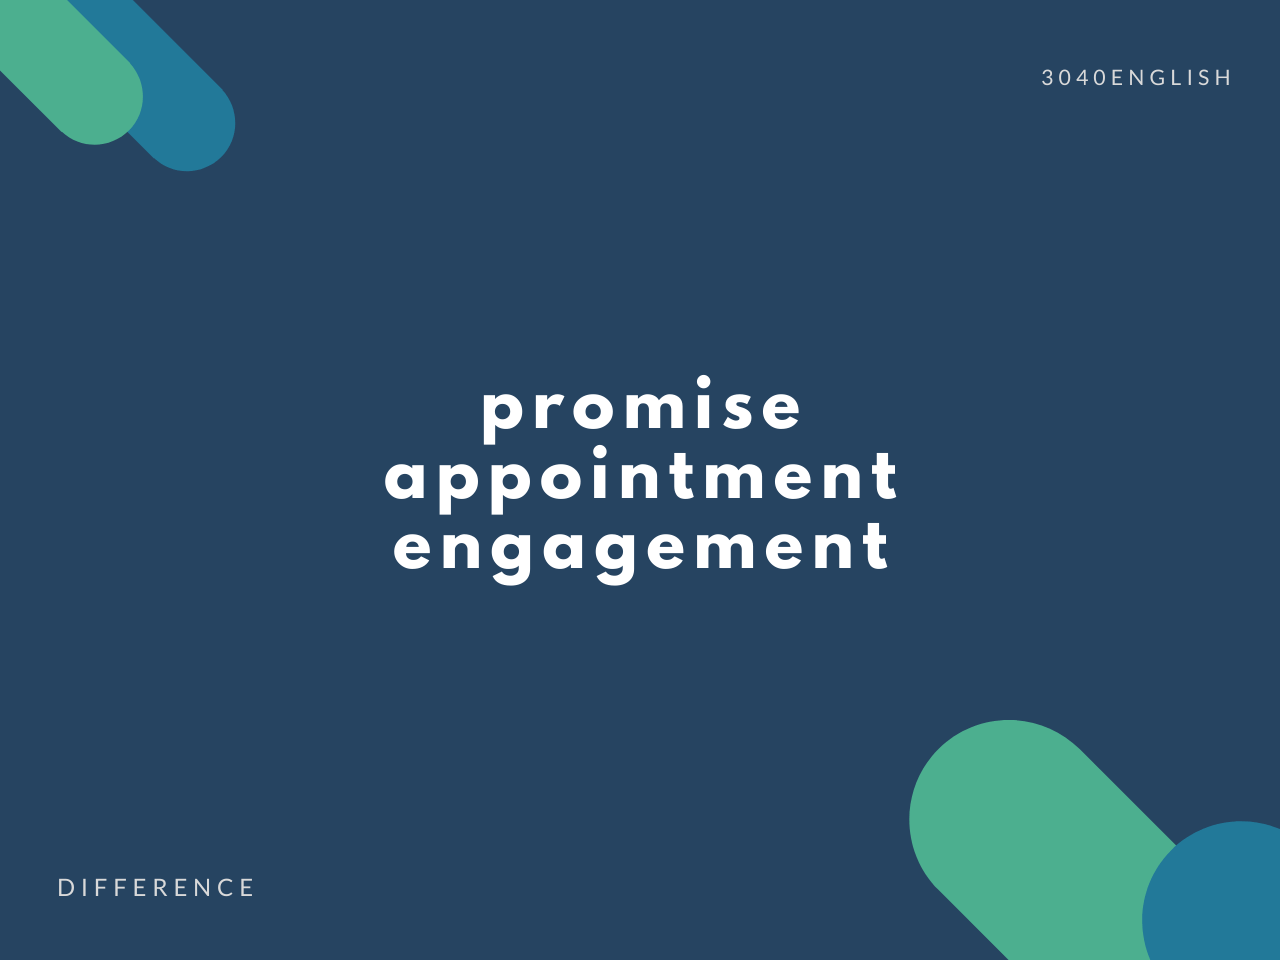 【約束】promise, appointment, engagement の違い【英語表現例あり】